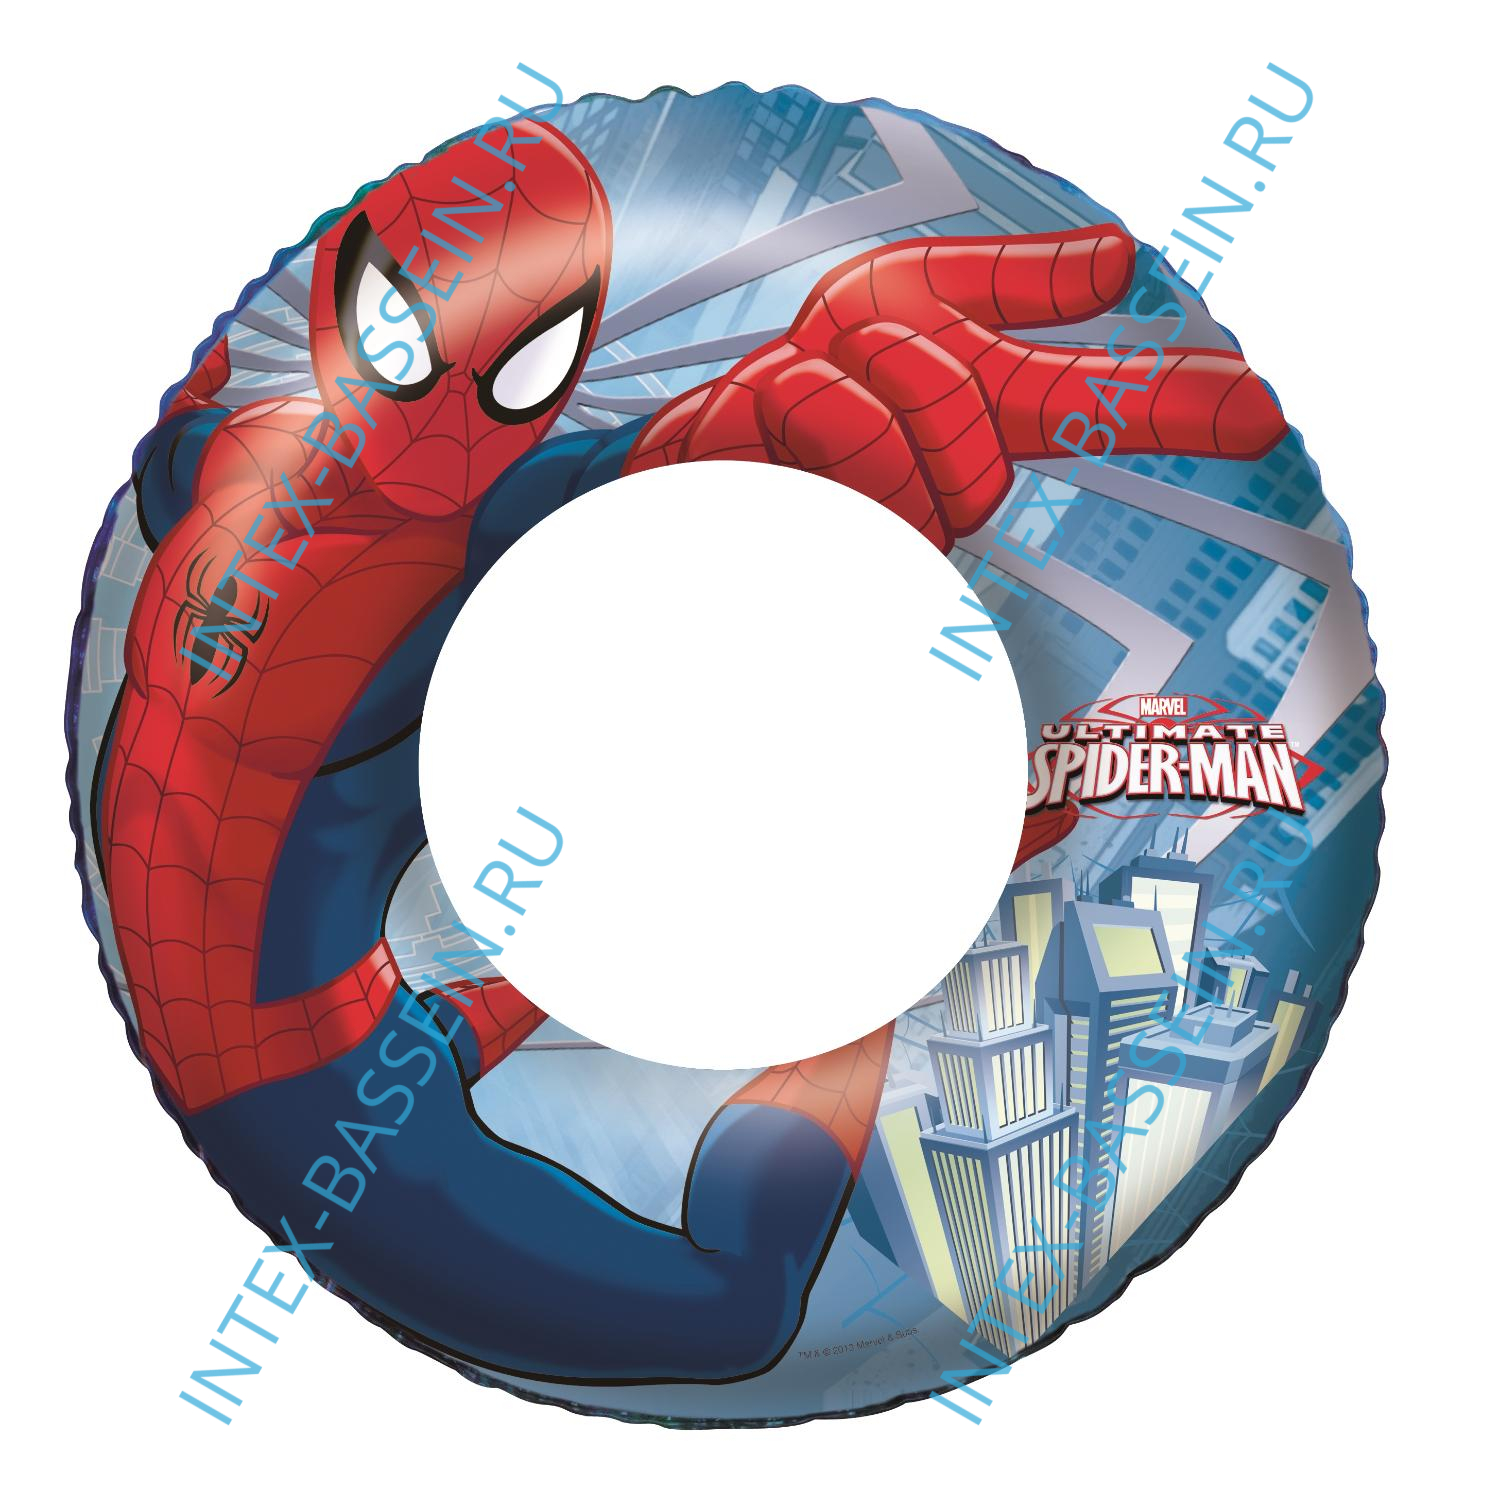 Надувной круг Bestway "Человек-паук" для плавания 56 см, артикул 98003